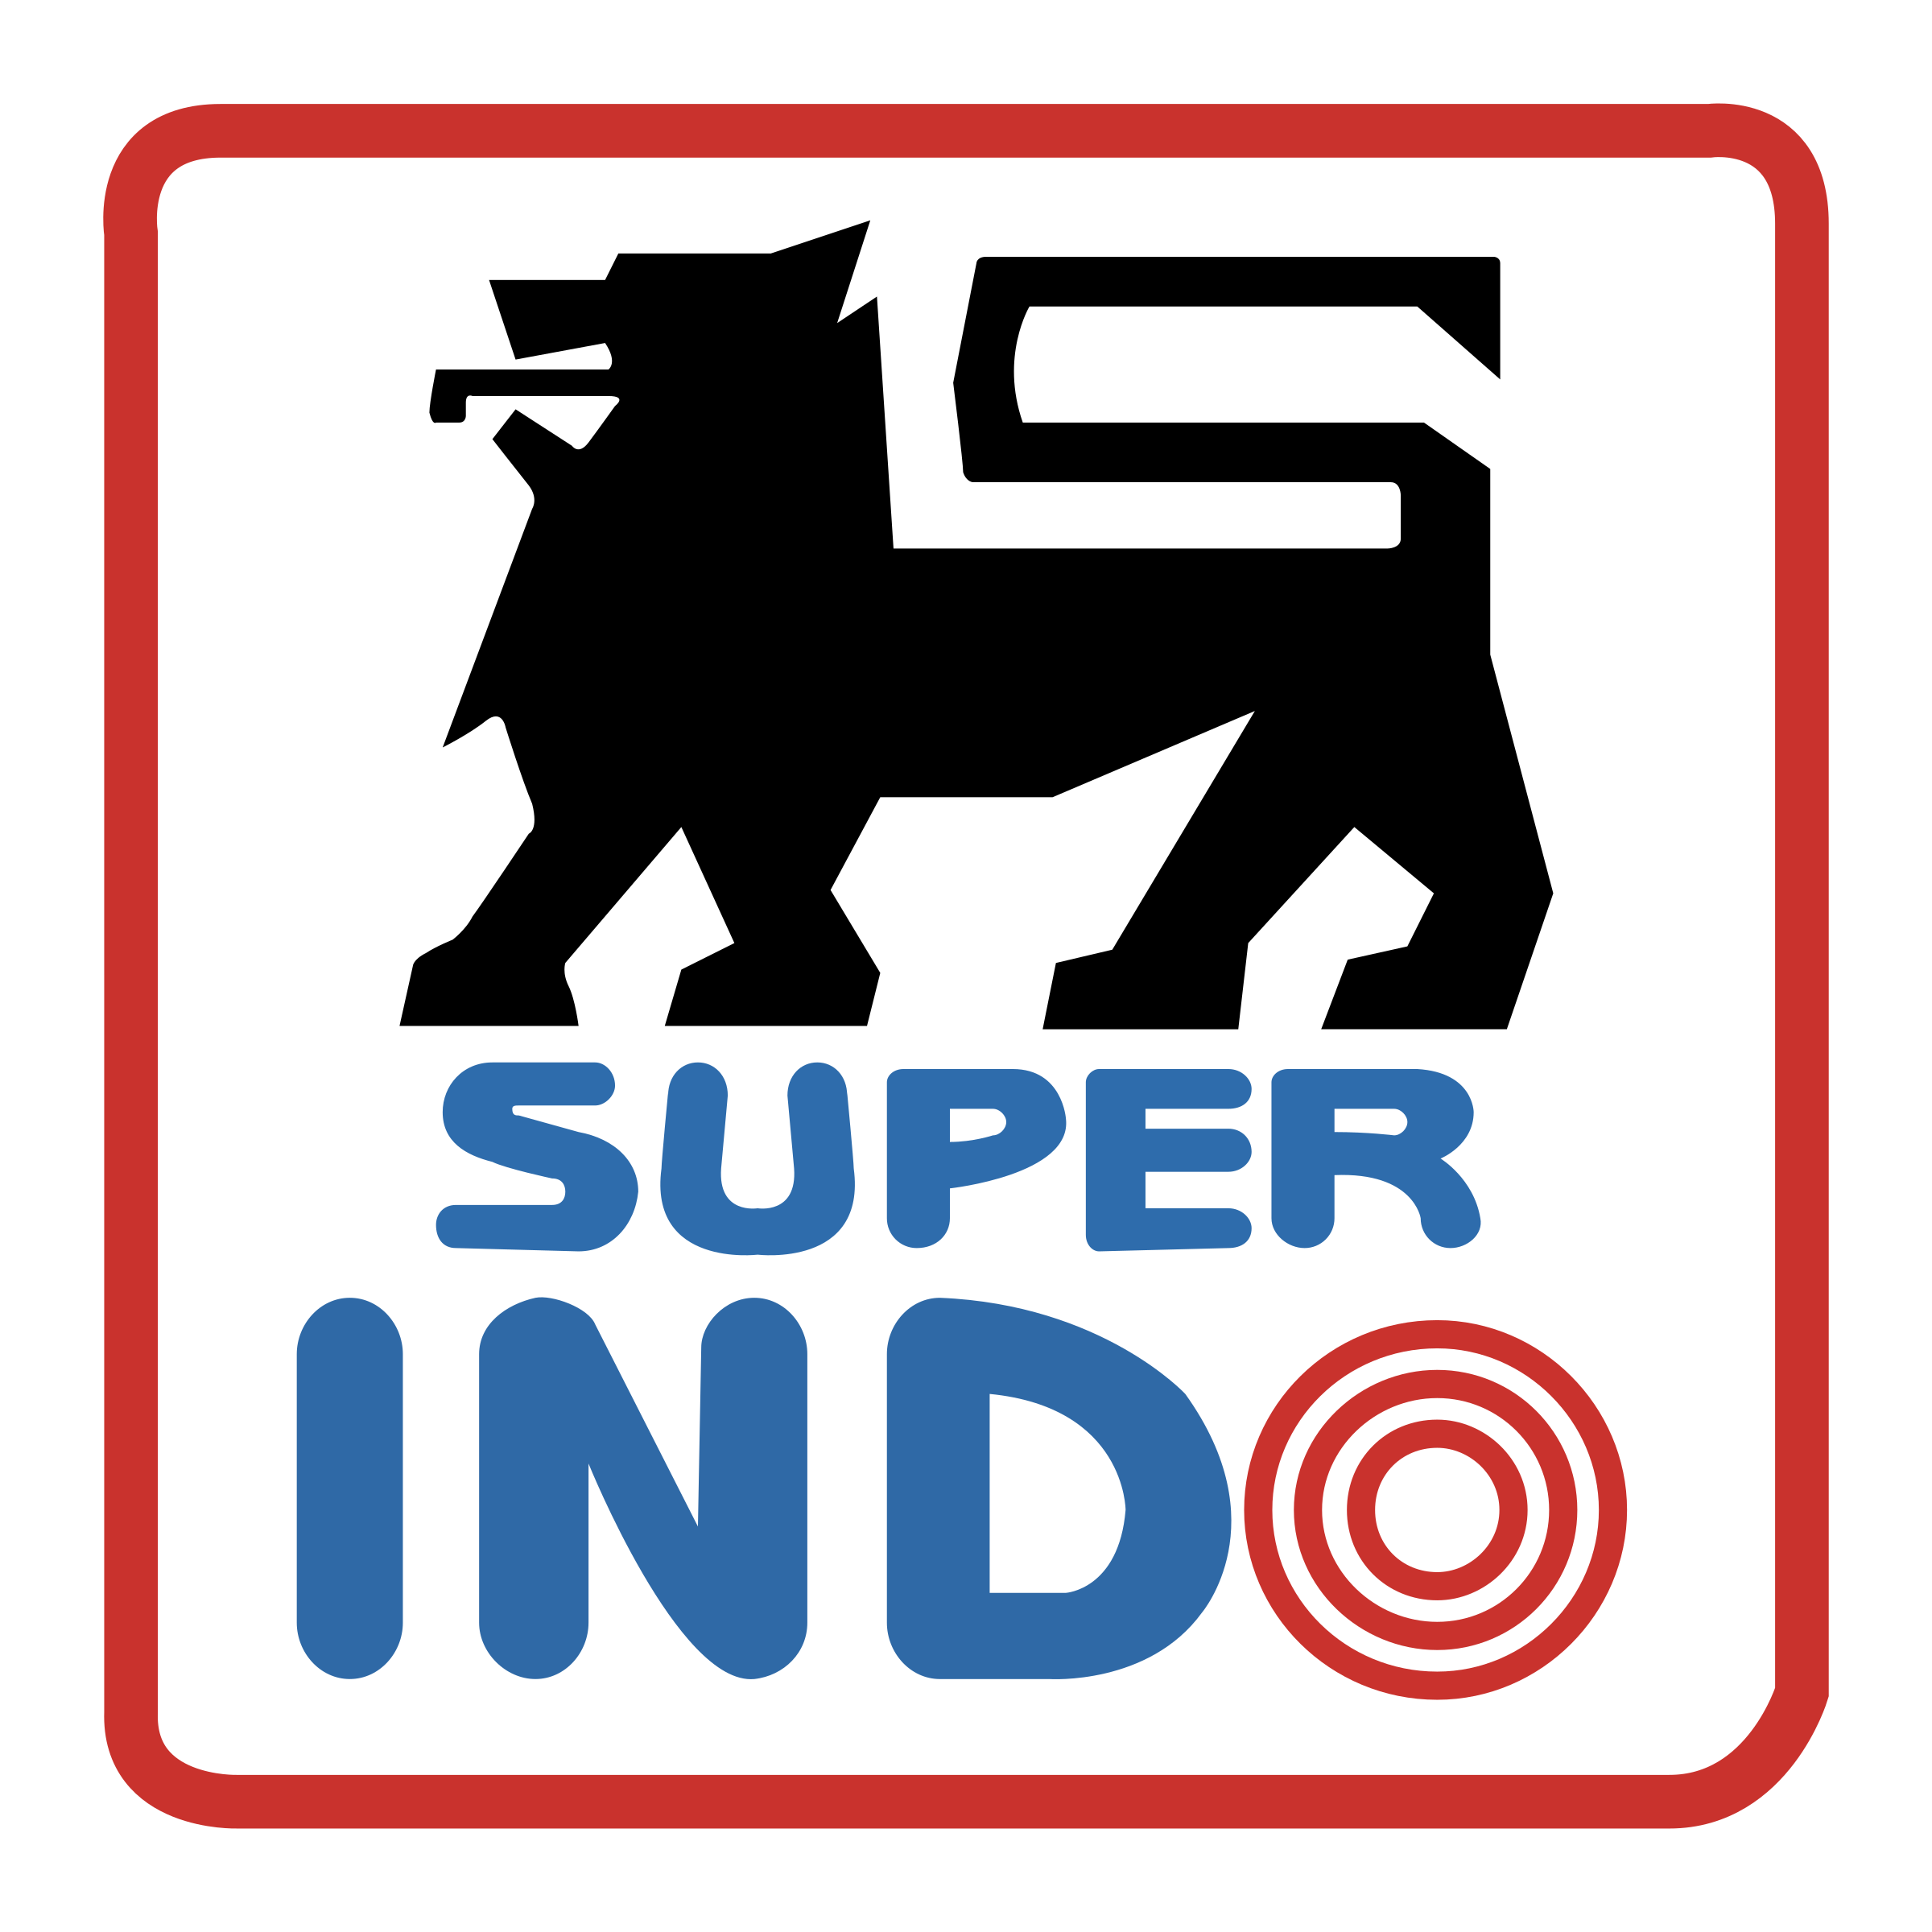 Super Indo Brand Logo